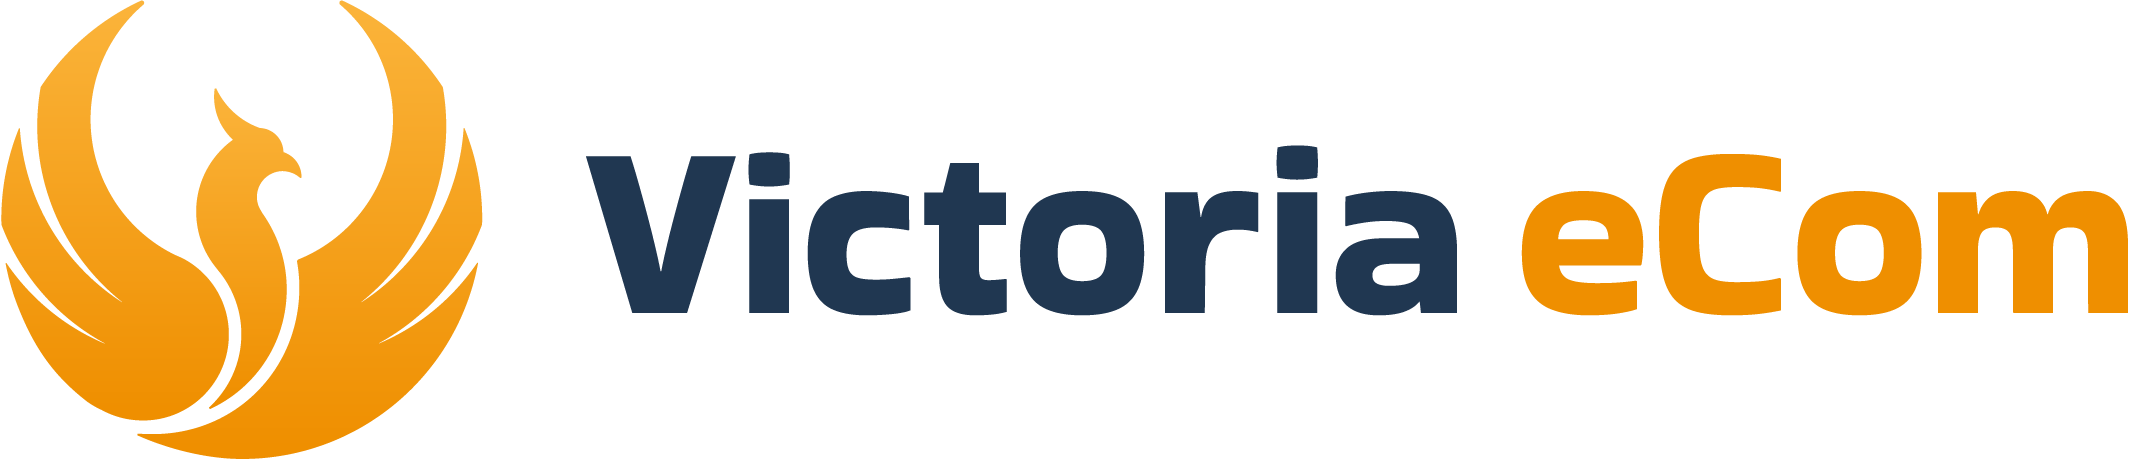 Victoria eCom Logo